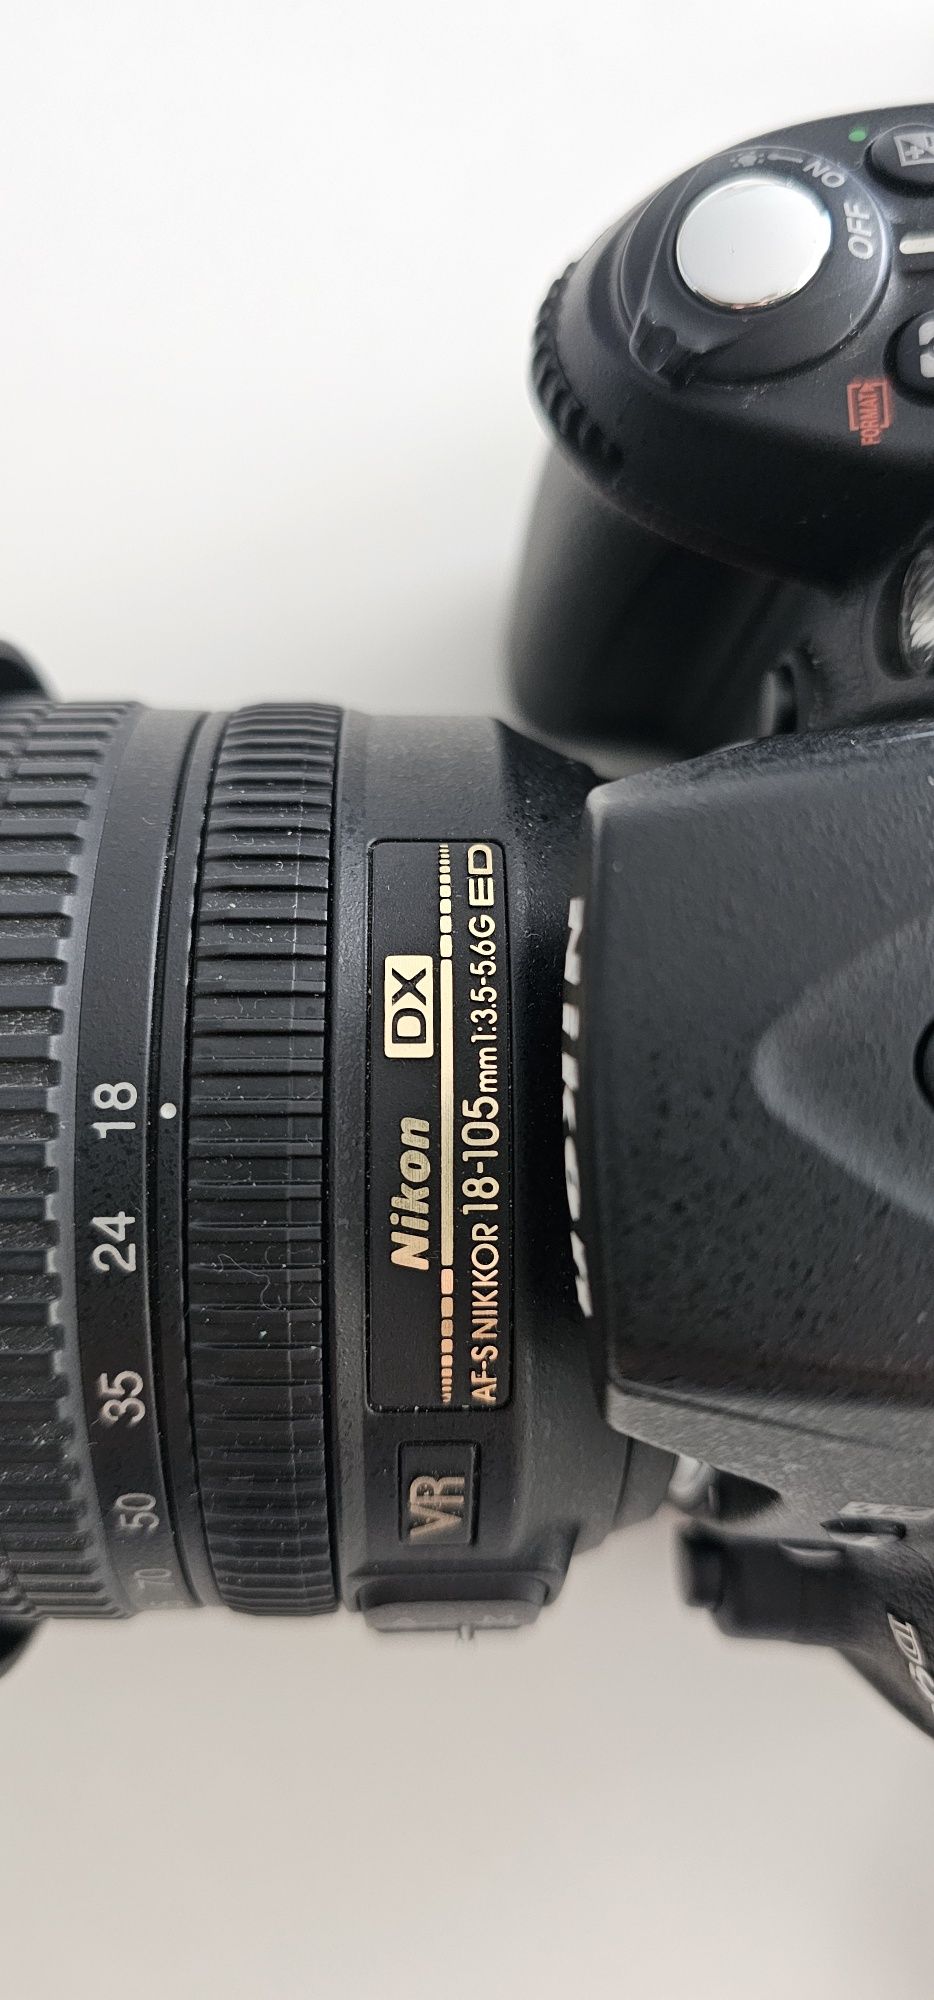 Фотоапарат Nikon D90 (18-105 VR kit) + дистанційний пульт + сумка